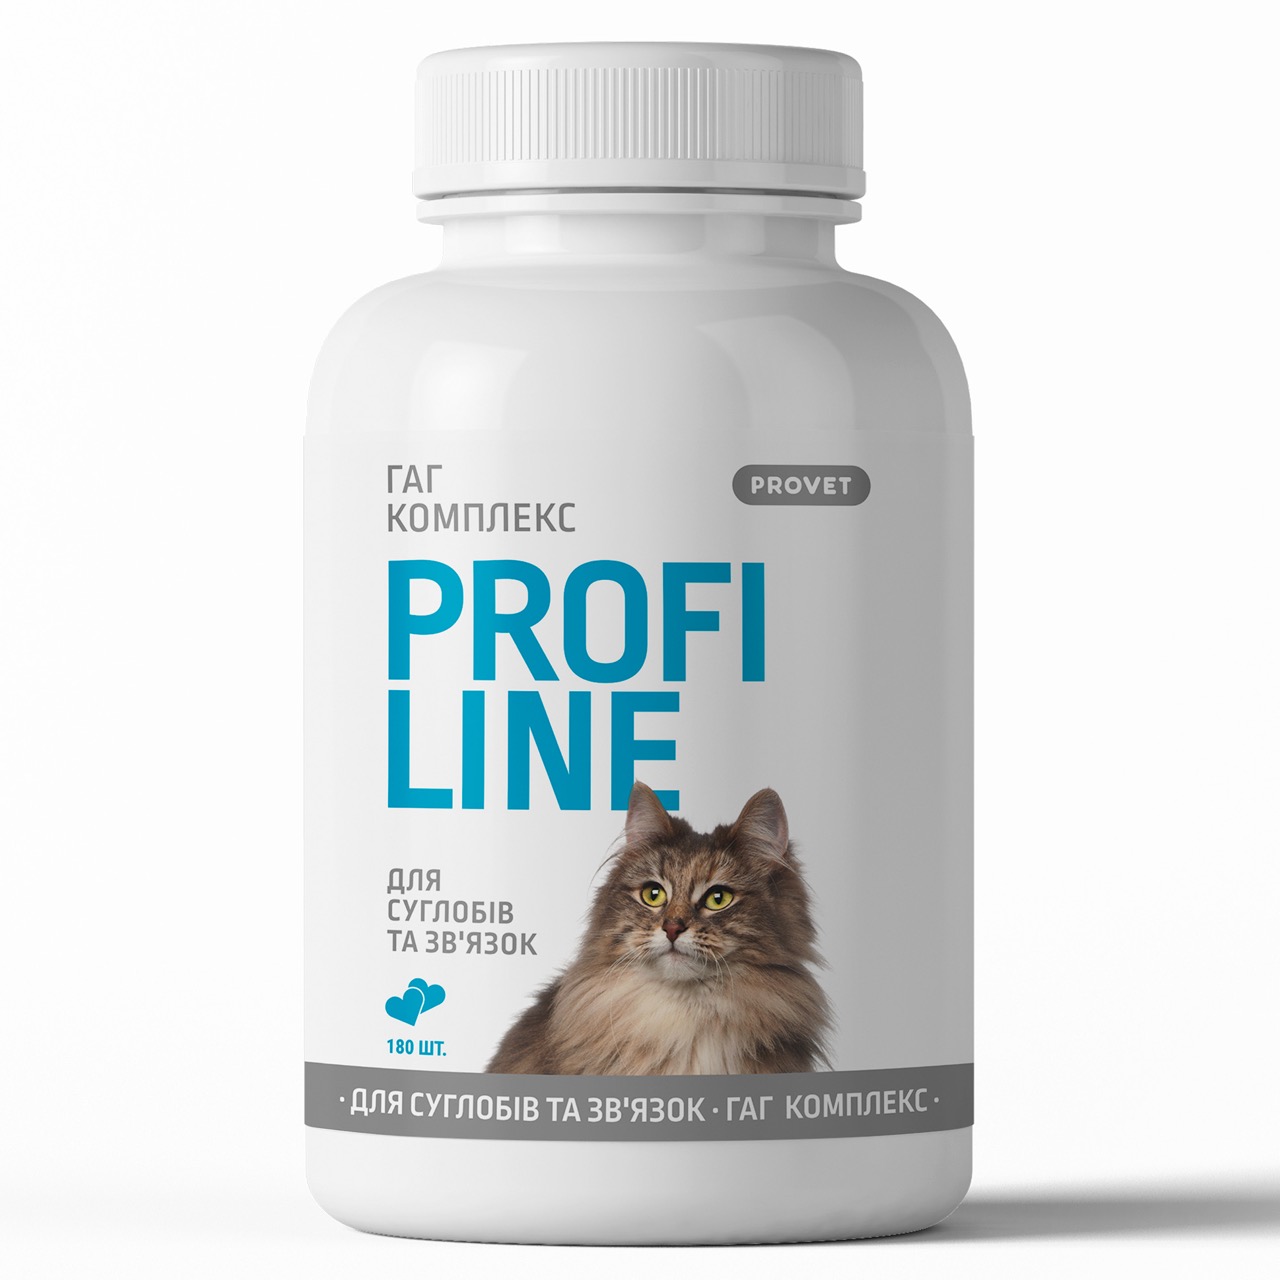 Фото - Прочие зоотовары ProVET Вітаміни  Профілайн ГАГ для котів для здоров'я суглобів та зв'язок 1 